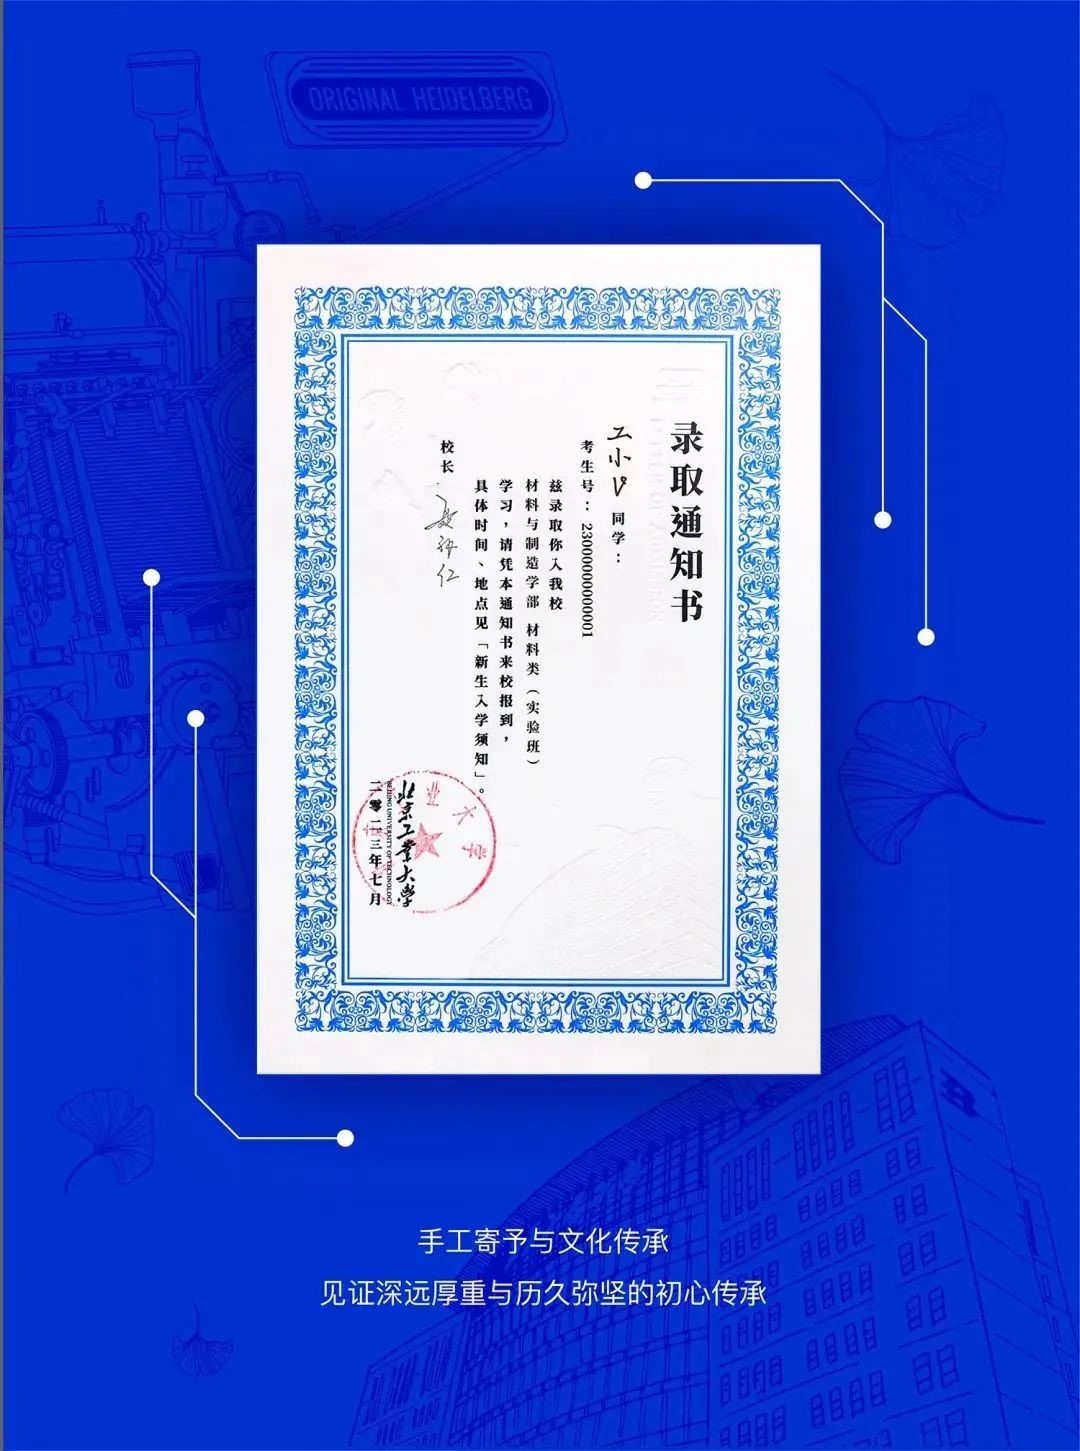 北京工業大學新版錄取通知書。校方供圖